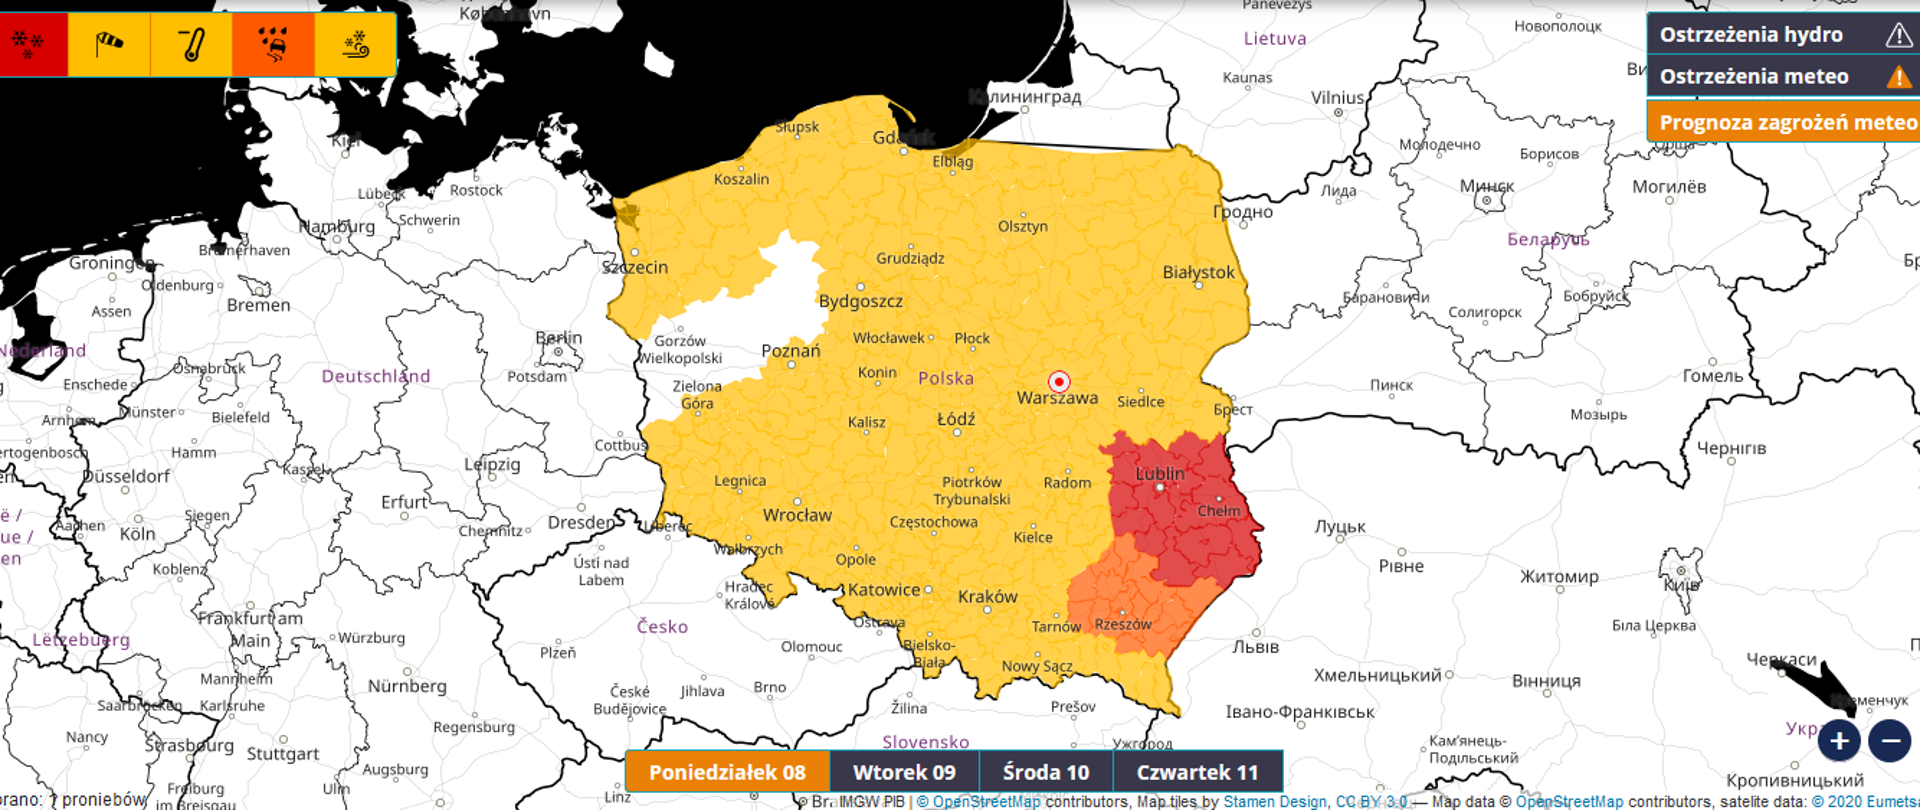 Zdjęcie przedstawia mapę ostrzeżeni meteorologicznych. Żółtym kolorem zaznaczono obszar niemal całej Polski. IMGW wydało ostrzeżenia przez silnym mrozem i opadami śniegu.